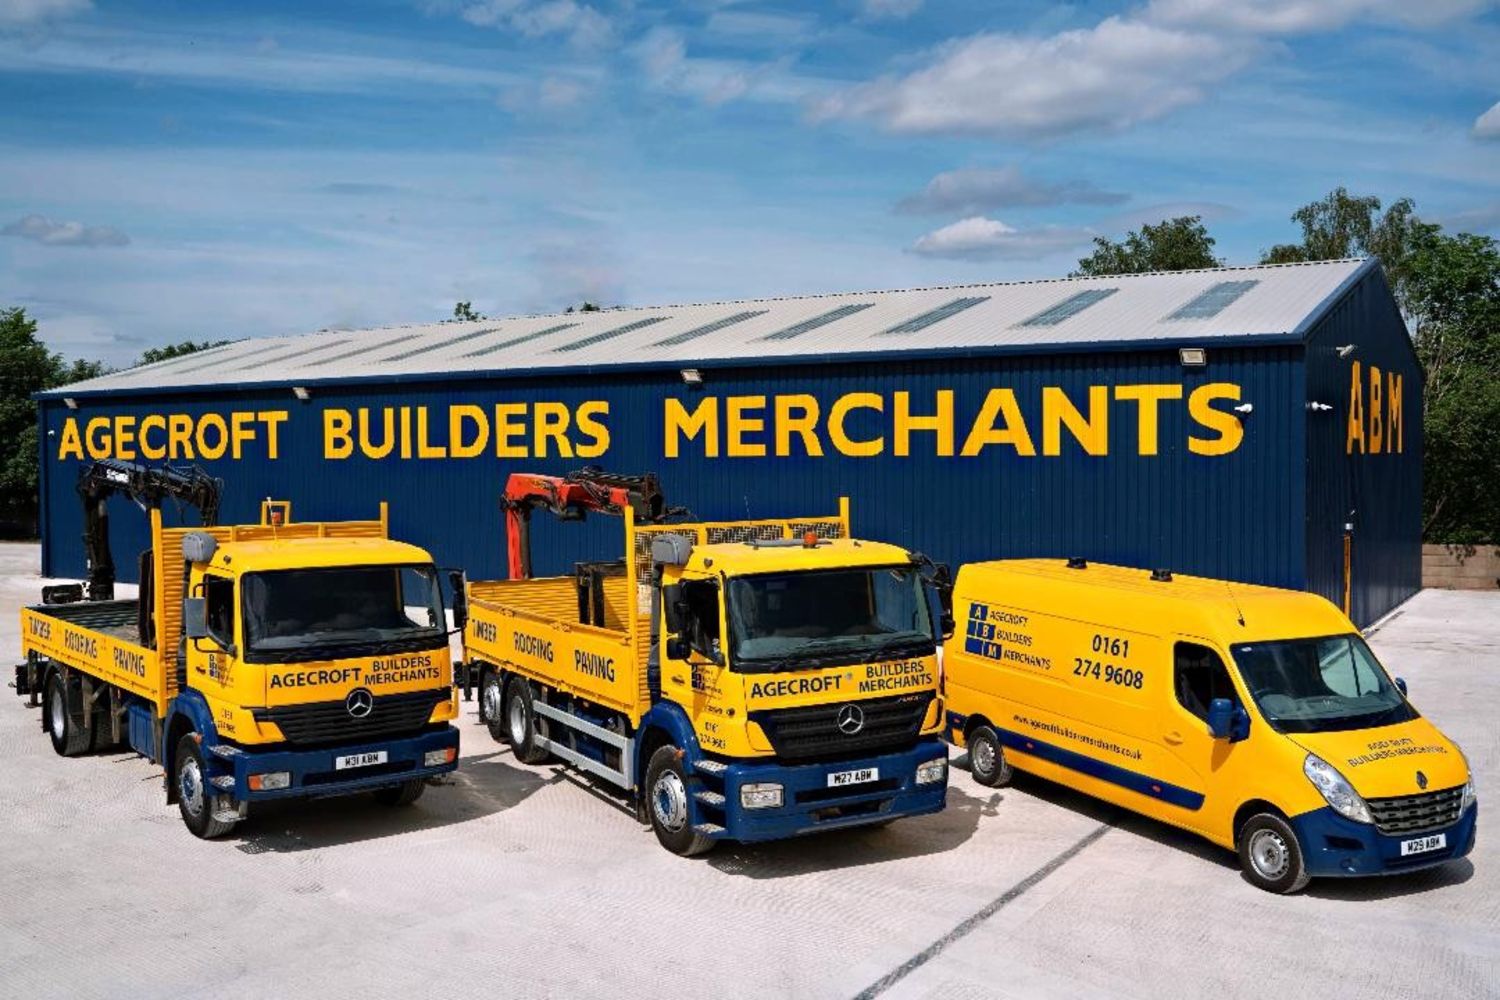 Builders Merchants Vehicles & Handling Equipment -  Mercedes / Iveco Crane Wagons (Agecroft Builders Merchants Limited – In Liquidation)